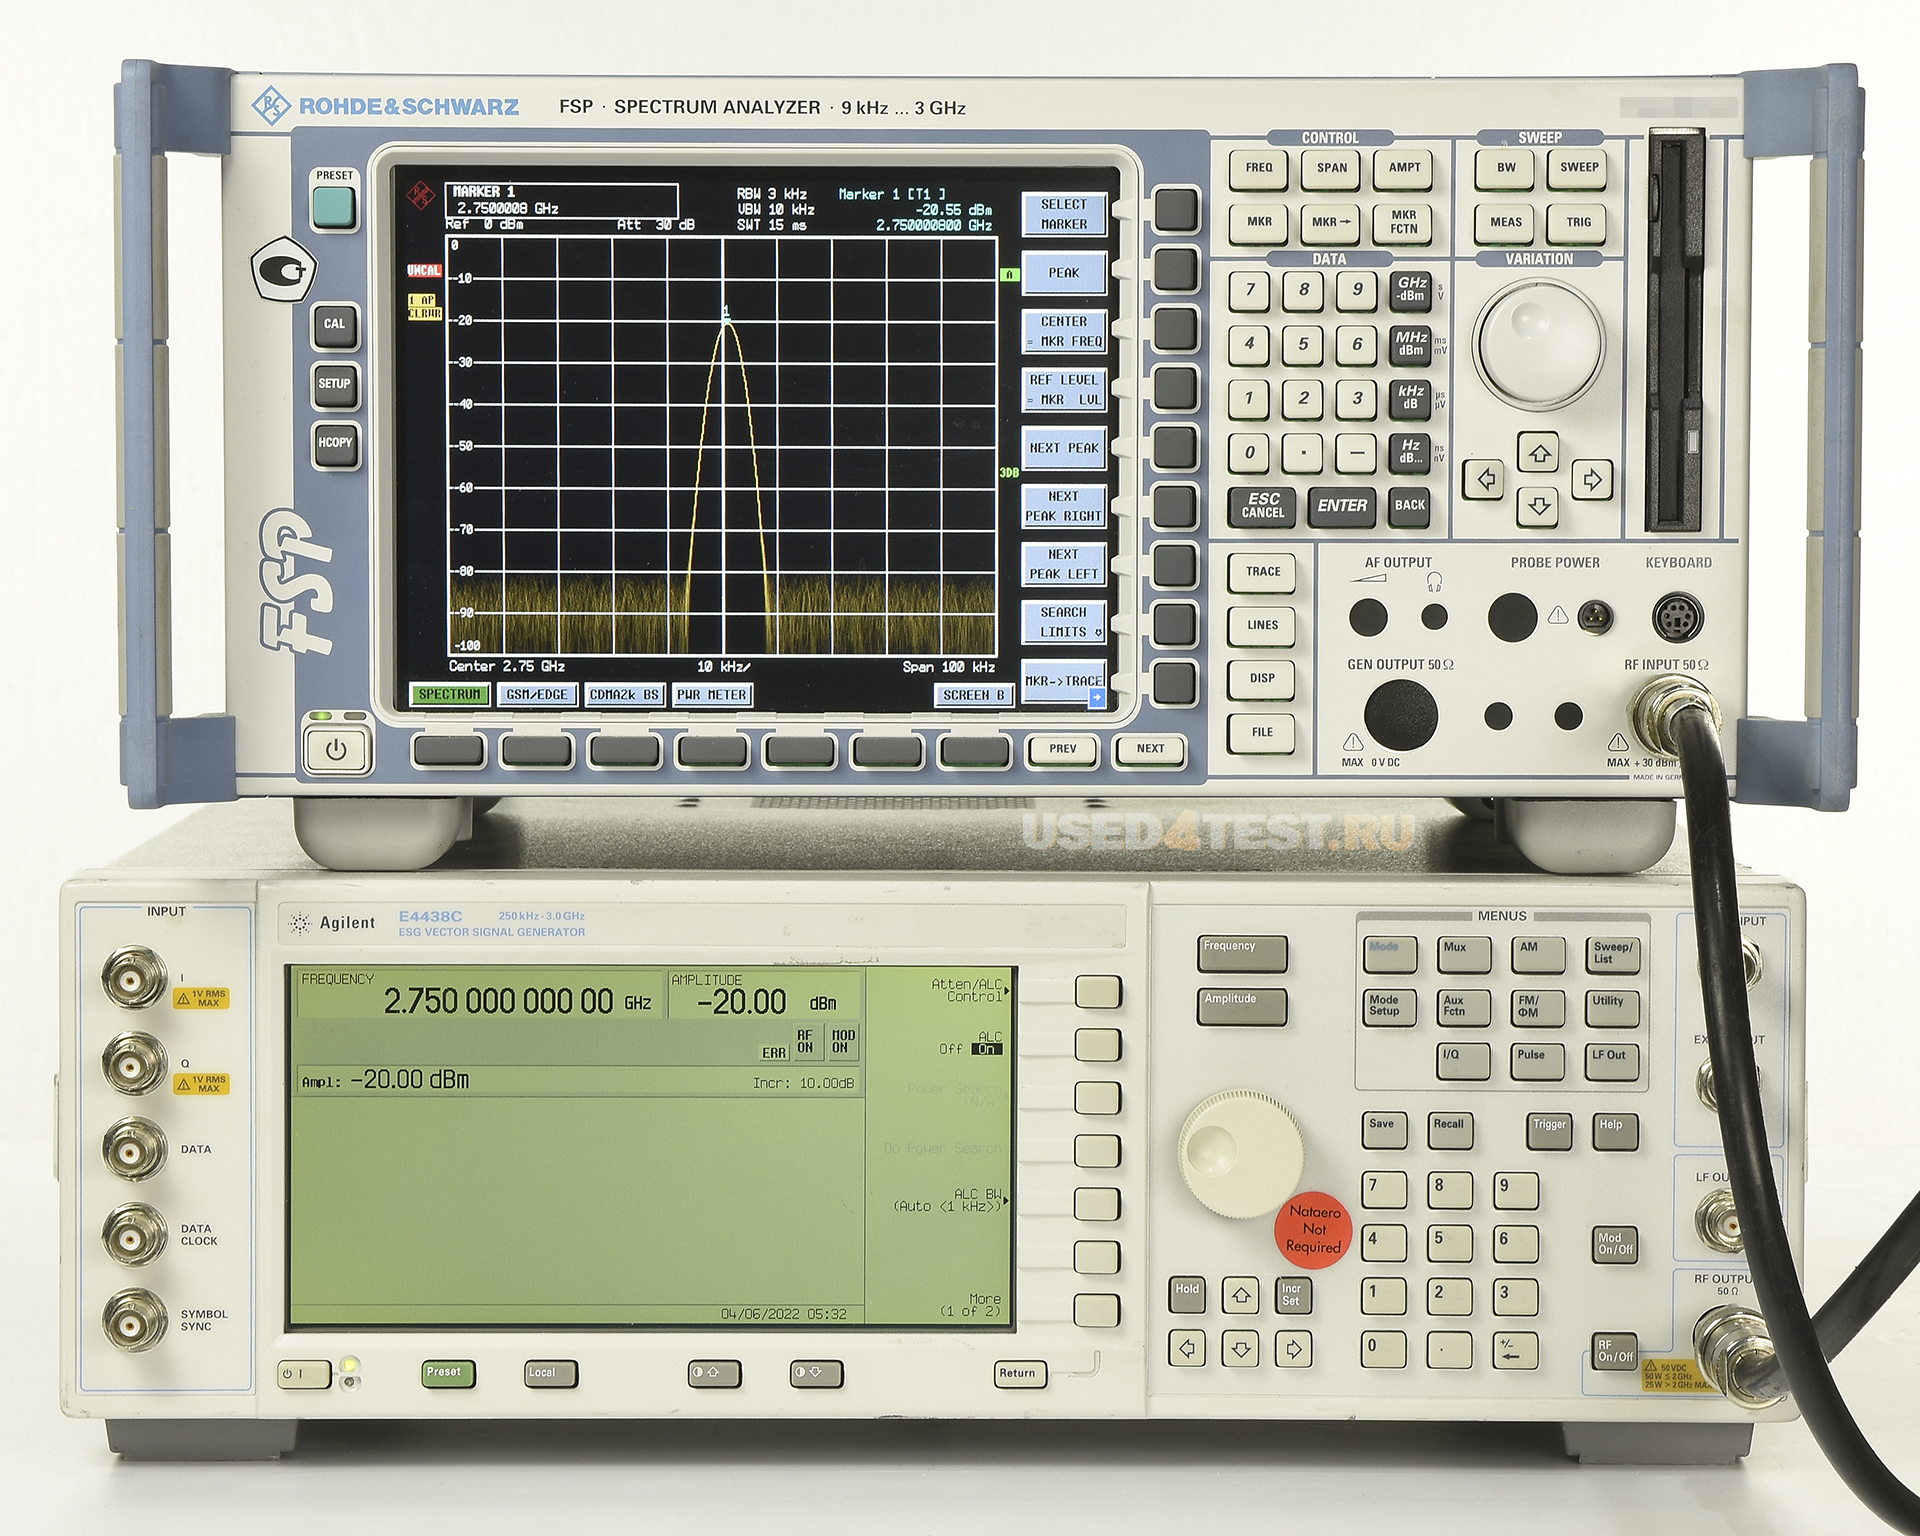 Анализатор спектра Rohde&Schwarz FSP3
 с диапазоном частот от 9 кГц до 3 ГГц
 

 Дополнительные опции: 


	R&S® FS-K5 - Измерения параметров модуляции и спектра для базовых станций и мобильных телефонов стандартов GSM/EDGE
	R&S® FS-K7 - Измерительный ЧМ/АМ/ФМ-демодулятор общего назначения
	R&S® FS-K8 - Измерения характеристик передатчиков стандарта Bluetooth
	R&S® FS-K9 - Измерение мощности при помощи измерительных головок
	R&S® FS-K30 - Измерение коэффициента шума, функции аналогичны R&S®FS-K3, но с поддержкой дистанционного управления
	R&S® FS-K40 - Аппаратно-программное обеспечение для измерений фазового шума

 

 Стоимость указана в Рублях DDP Москва по безналичному расчету без НДС
